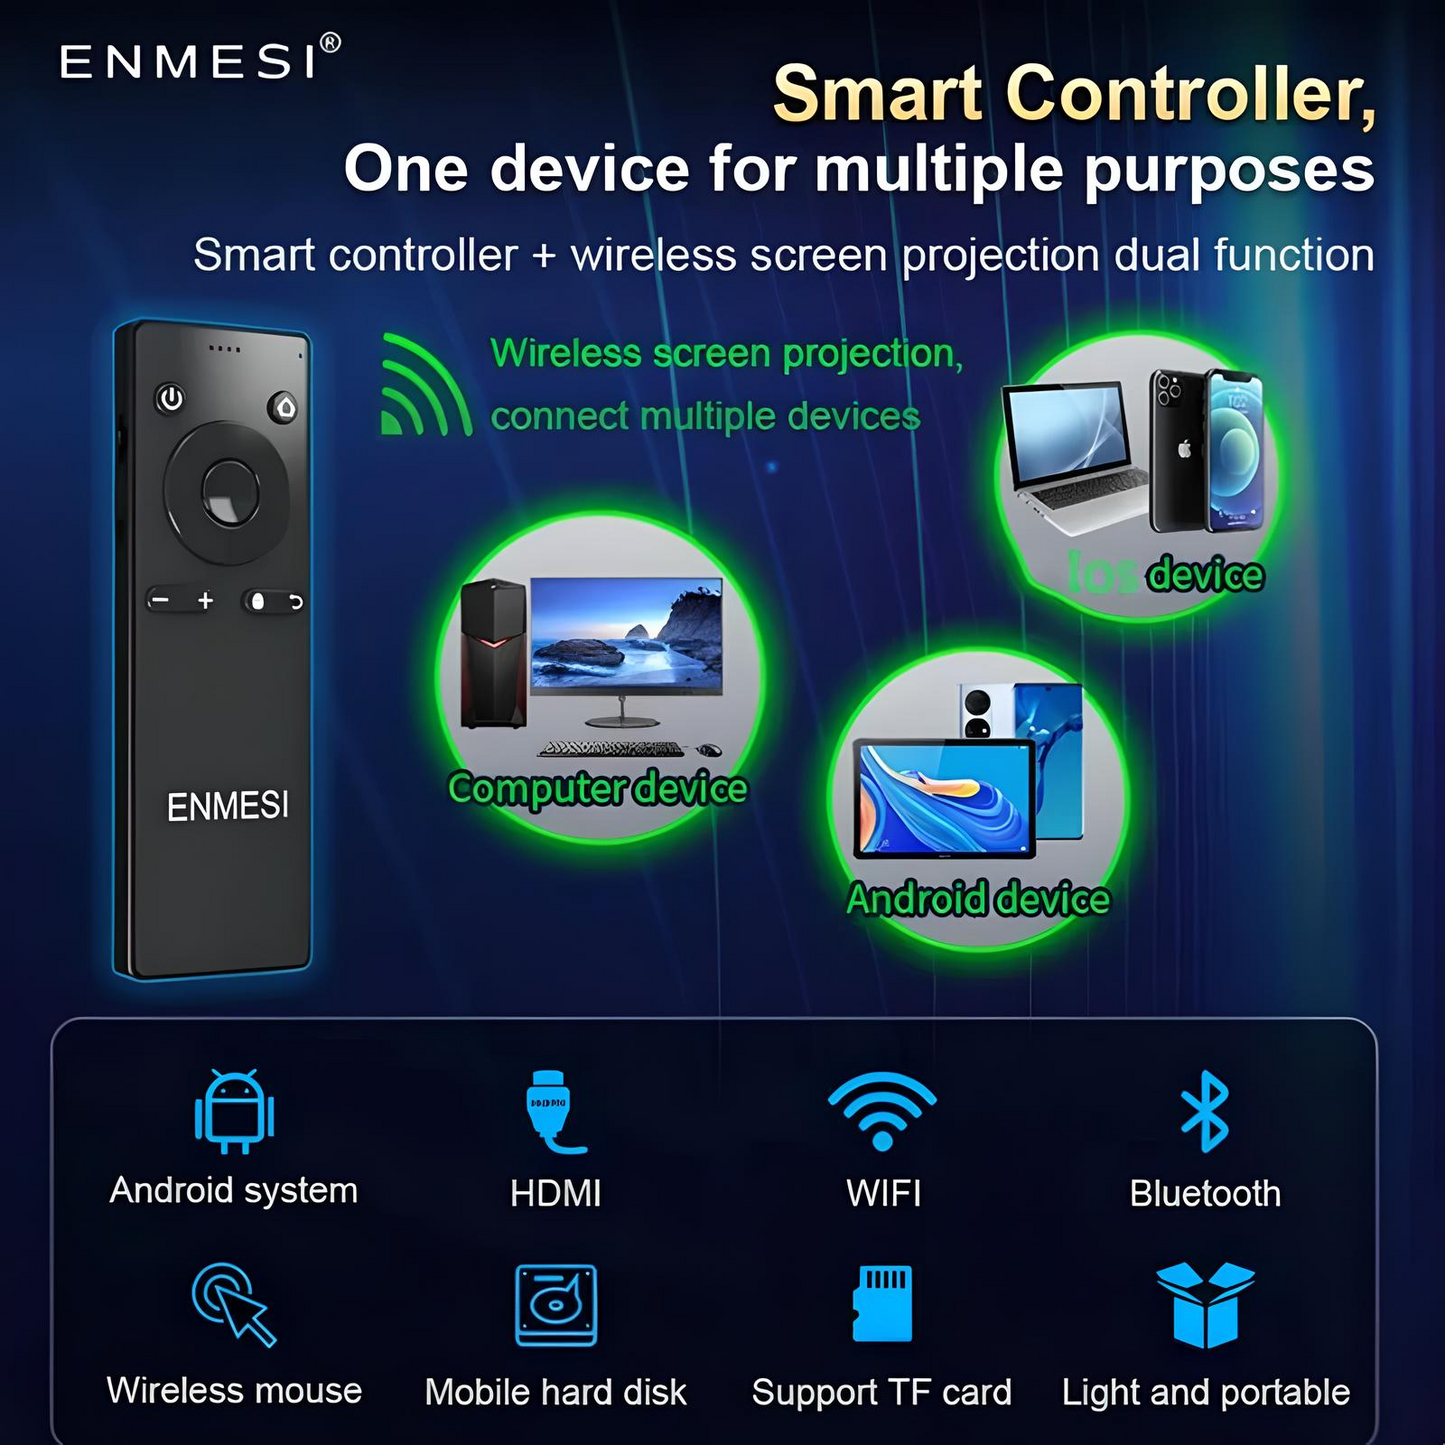 ENMESI Smart Controller